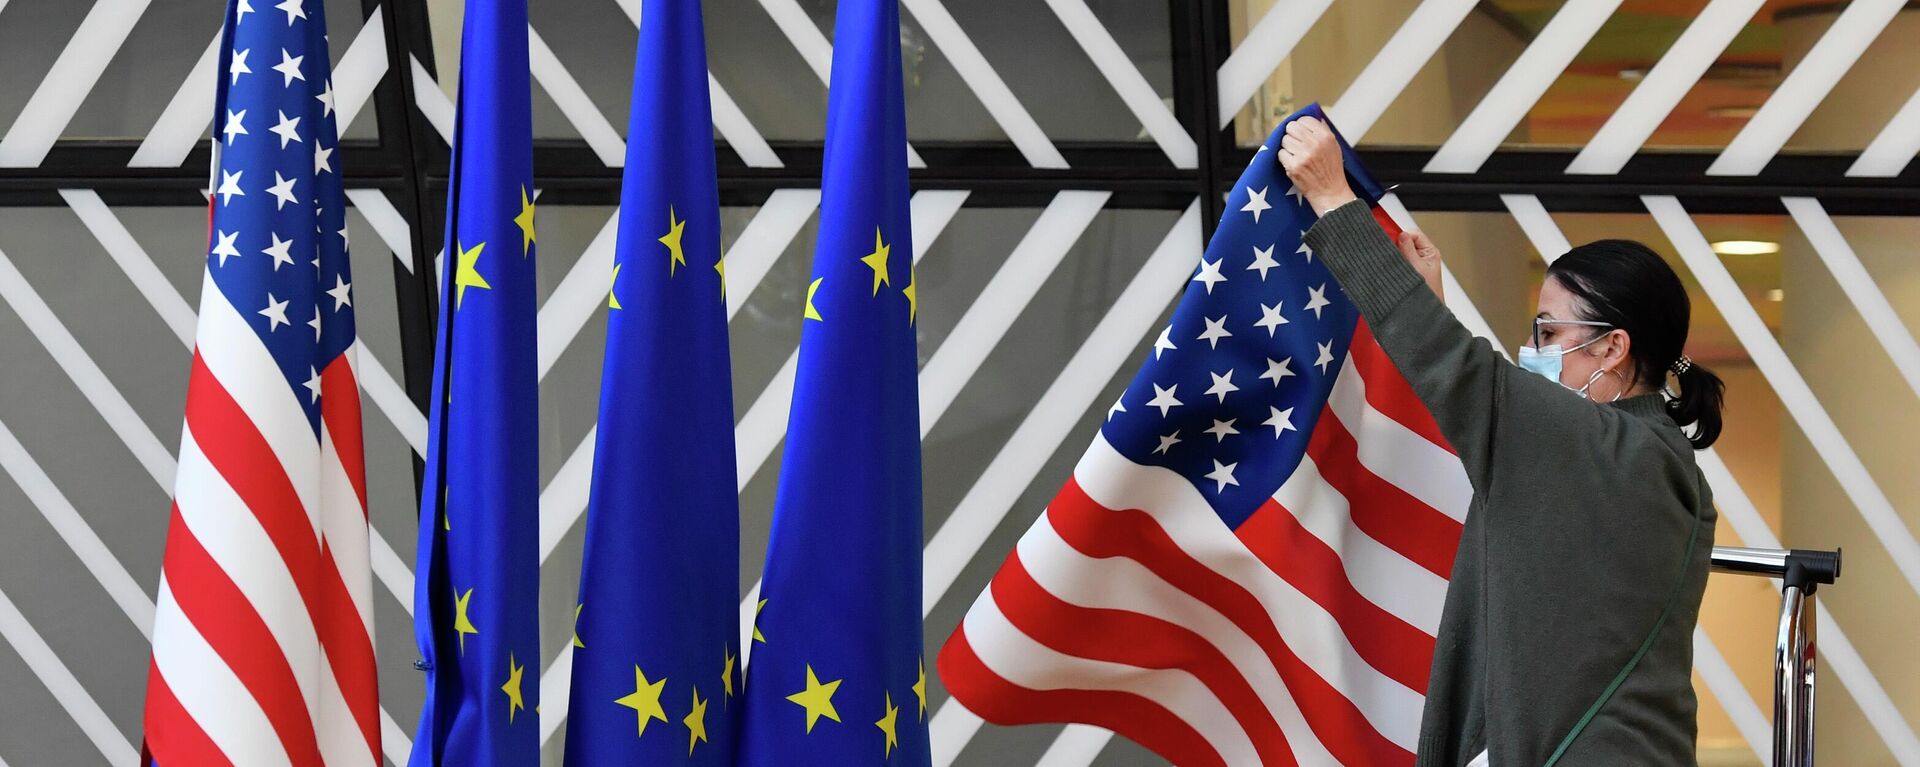 Membro da equipe de protocolo ajusta as bandeiras dos Estados Unidos e da União Europeia (UE) antes da chegada de chanceleres para encontro, em Bruxelas, na Bélgica, em 4 de março de 2022 (foto de arquivo) - Sputnik Brasil, 1920, 22.06.2022